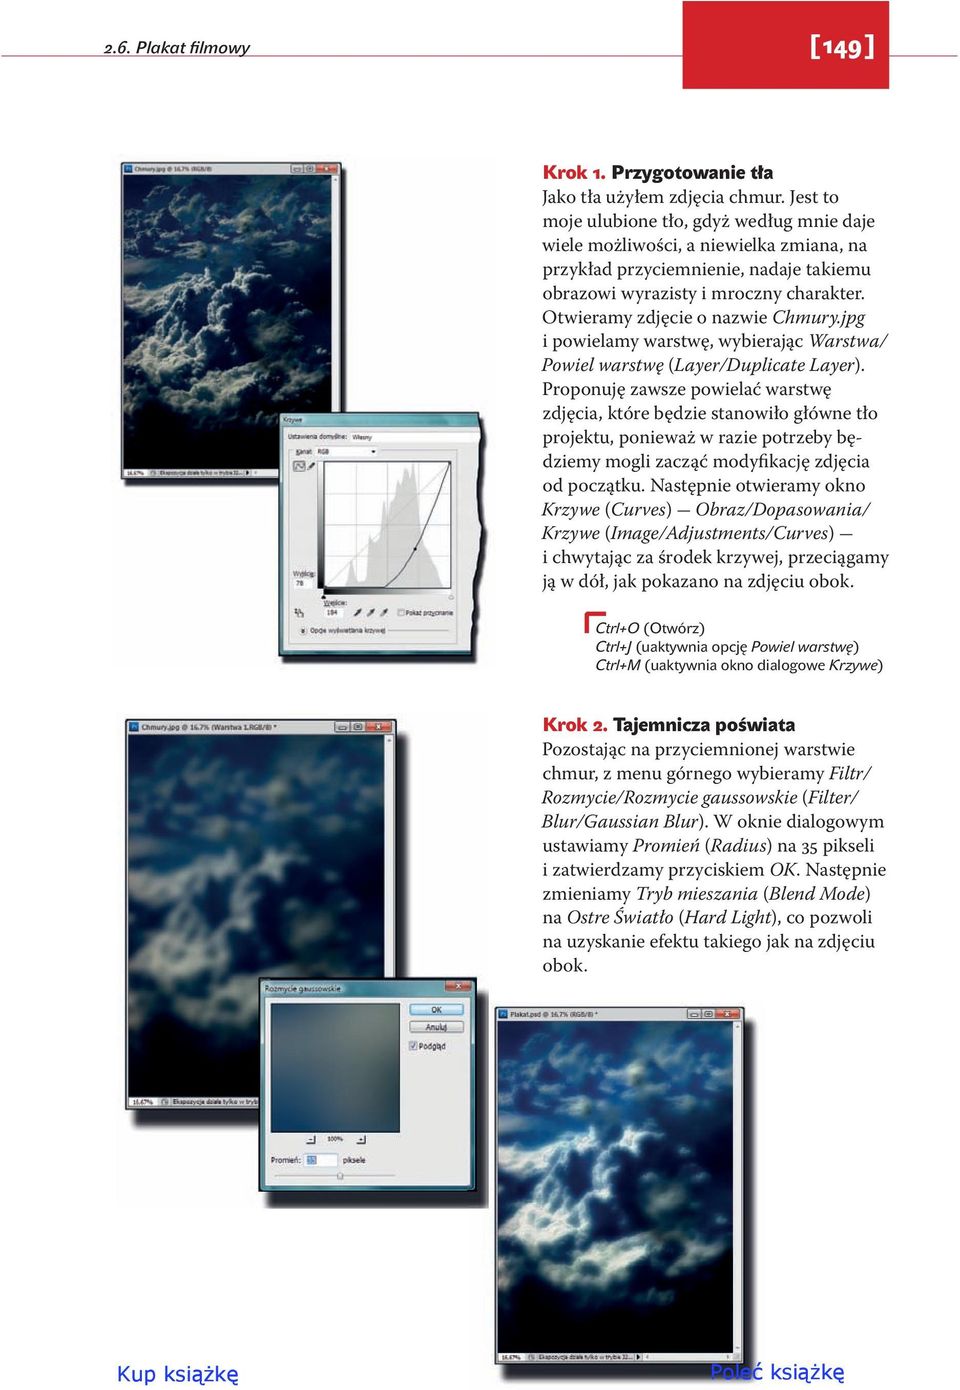 Otwieramy zdjęcie o nazwie Chmury.jpg i powielamy warstwę, wybierając Warstwa/ Powiel warstwę (Layer/Duplicate Layer).